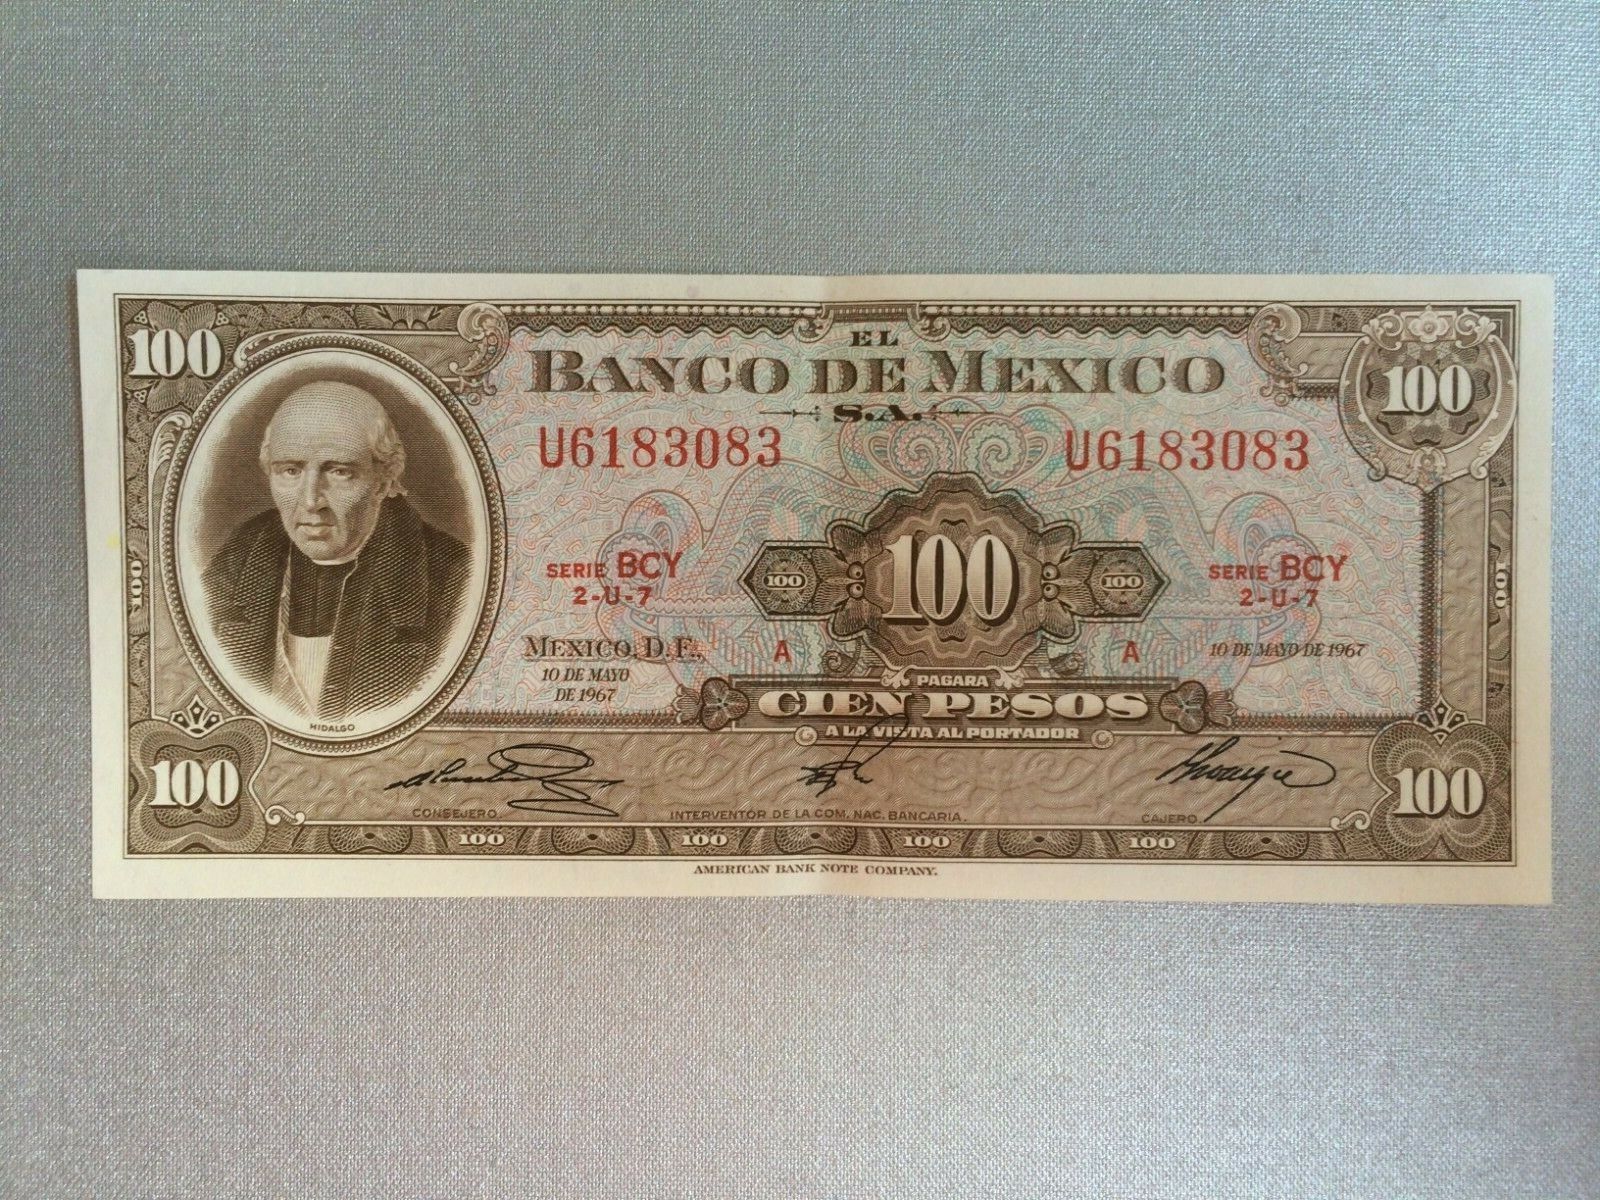 100 PESO MEXICO BANKNOTE 1967 CIR HIDALGO SERIE BCY 83 MEXICO